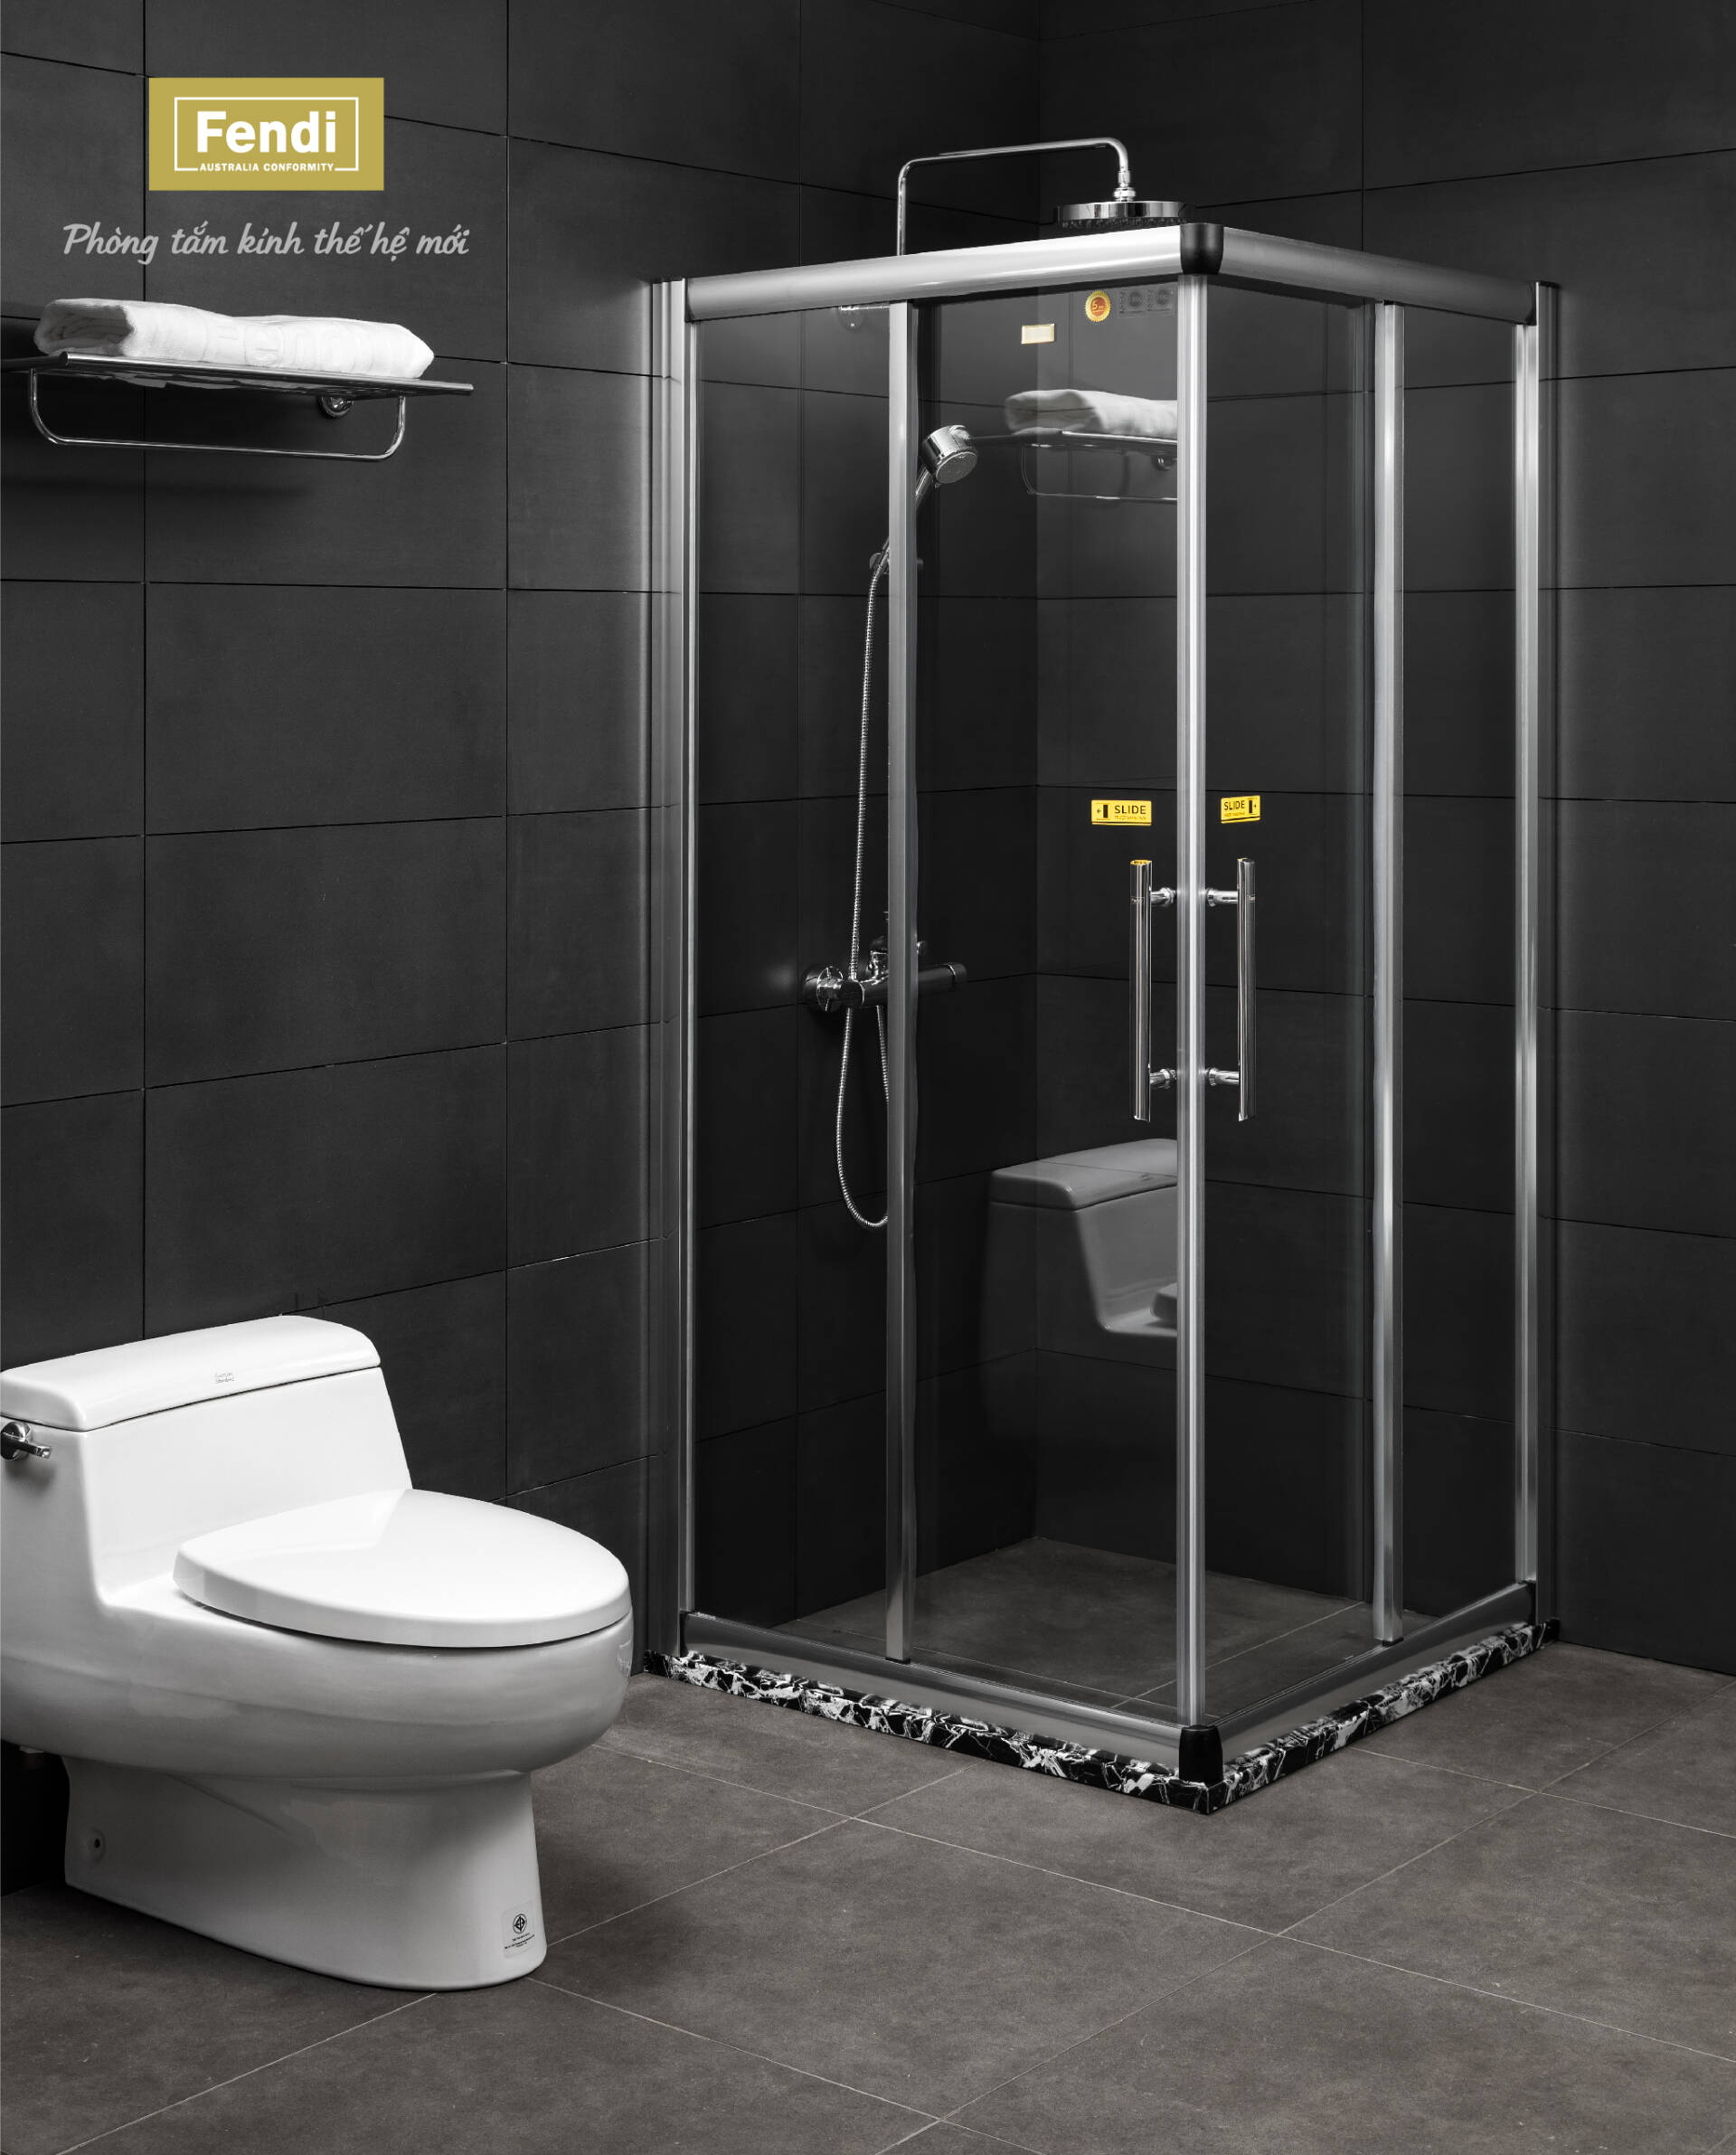 Phòng tắm kính Fendi hợp chuẩn Úc về kết cấu an toàn cho kính nên tạo cảm giác yên tâm cho người dùng khi sử dụng